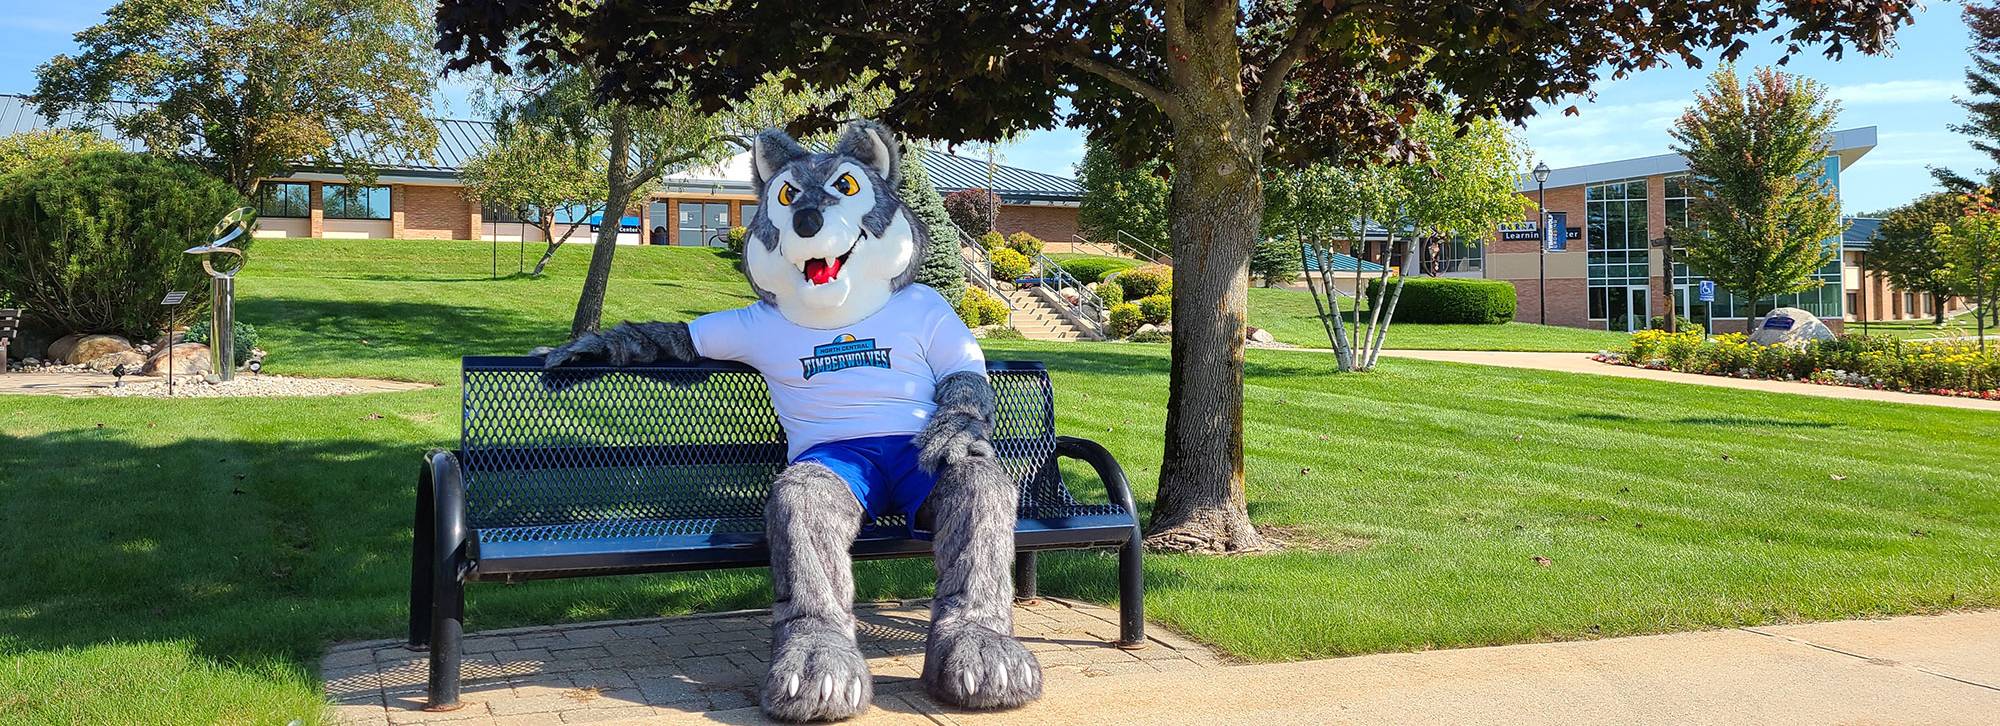 Timberwolf mascot sitting on a bench